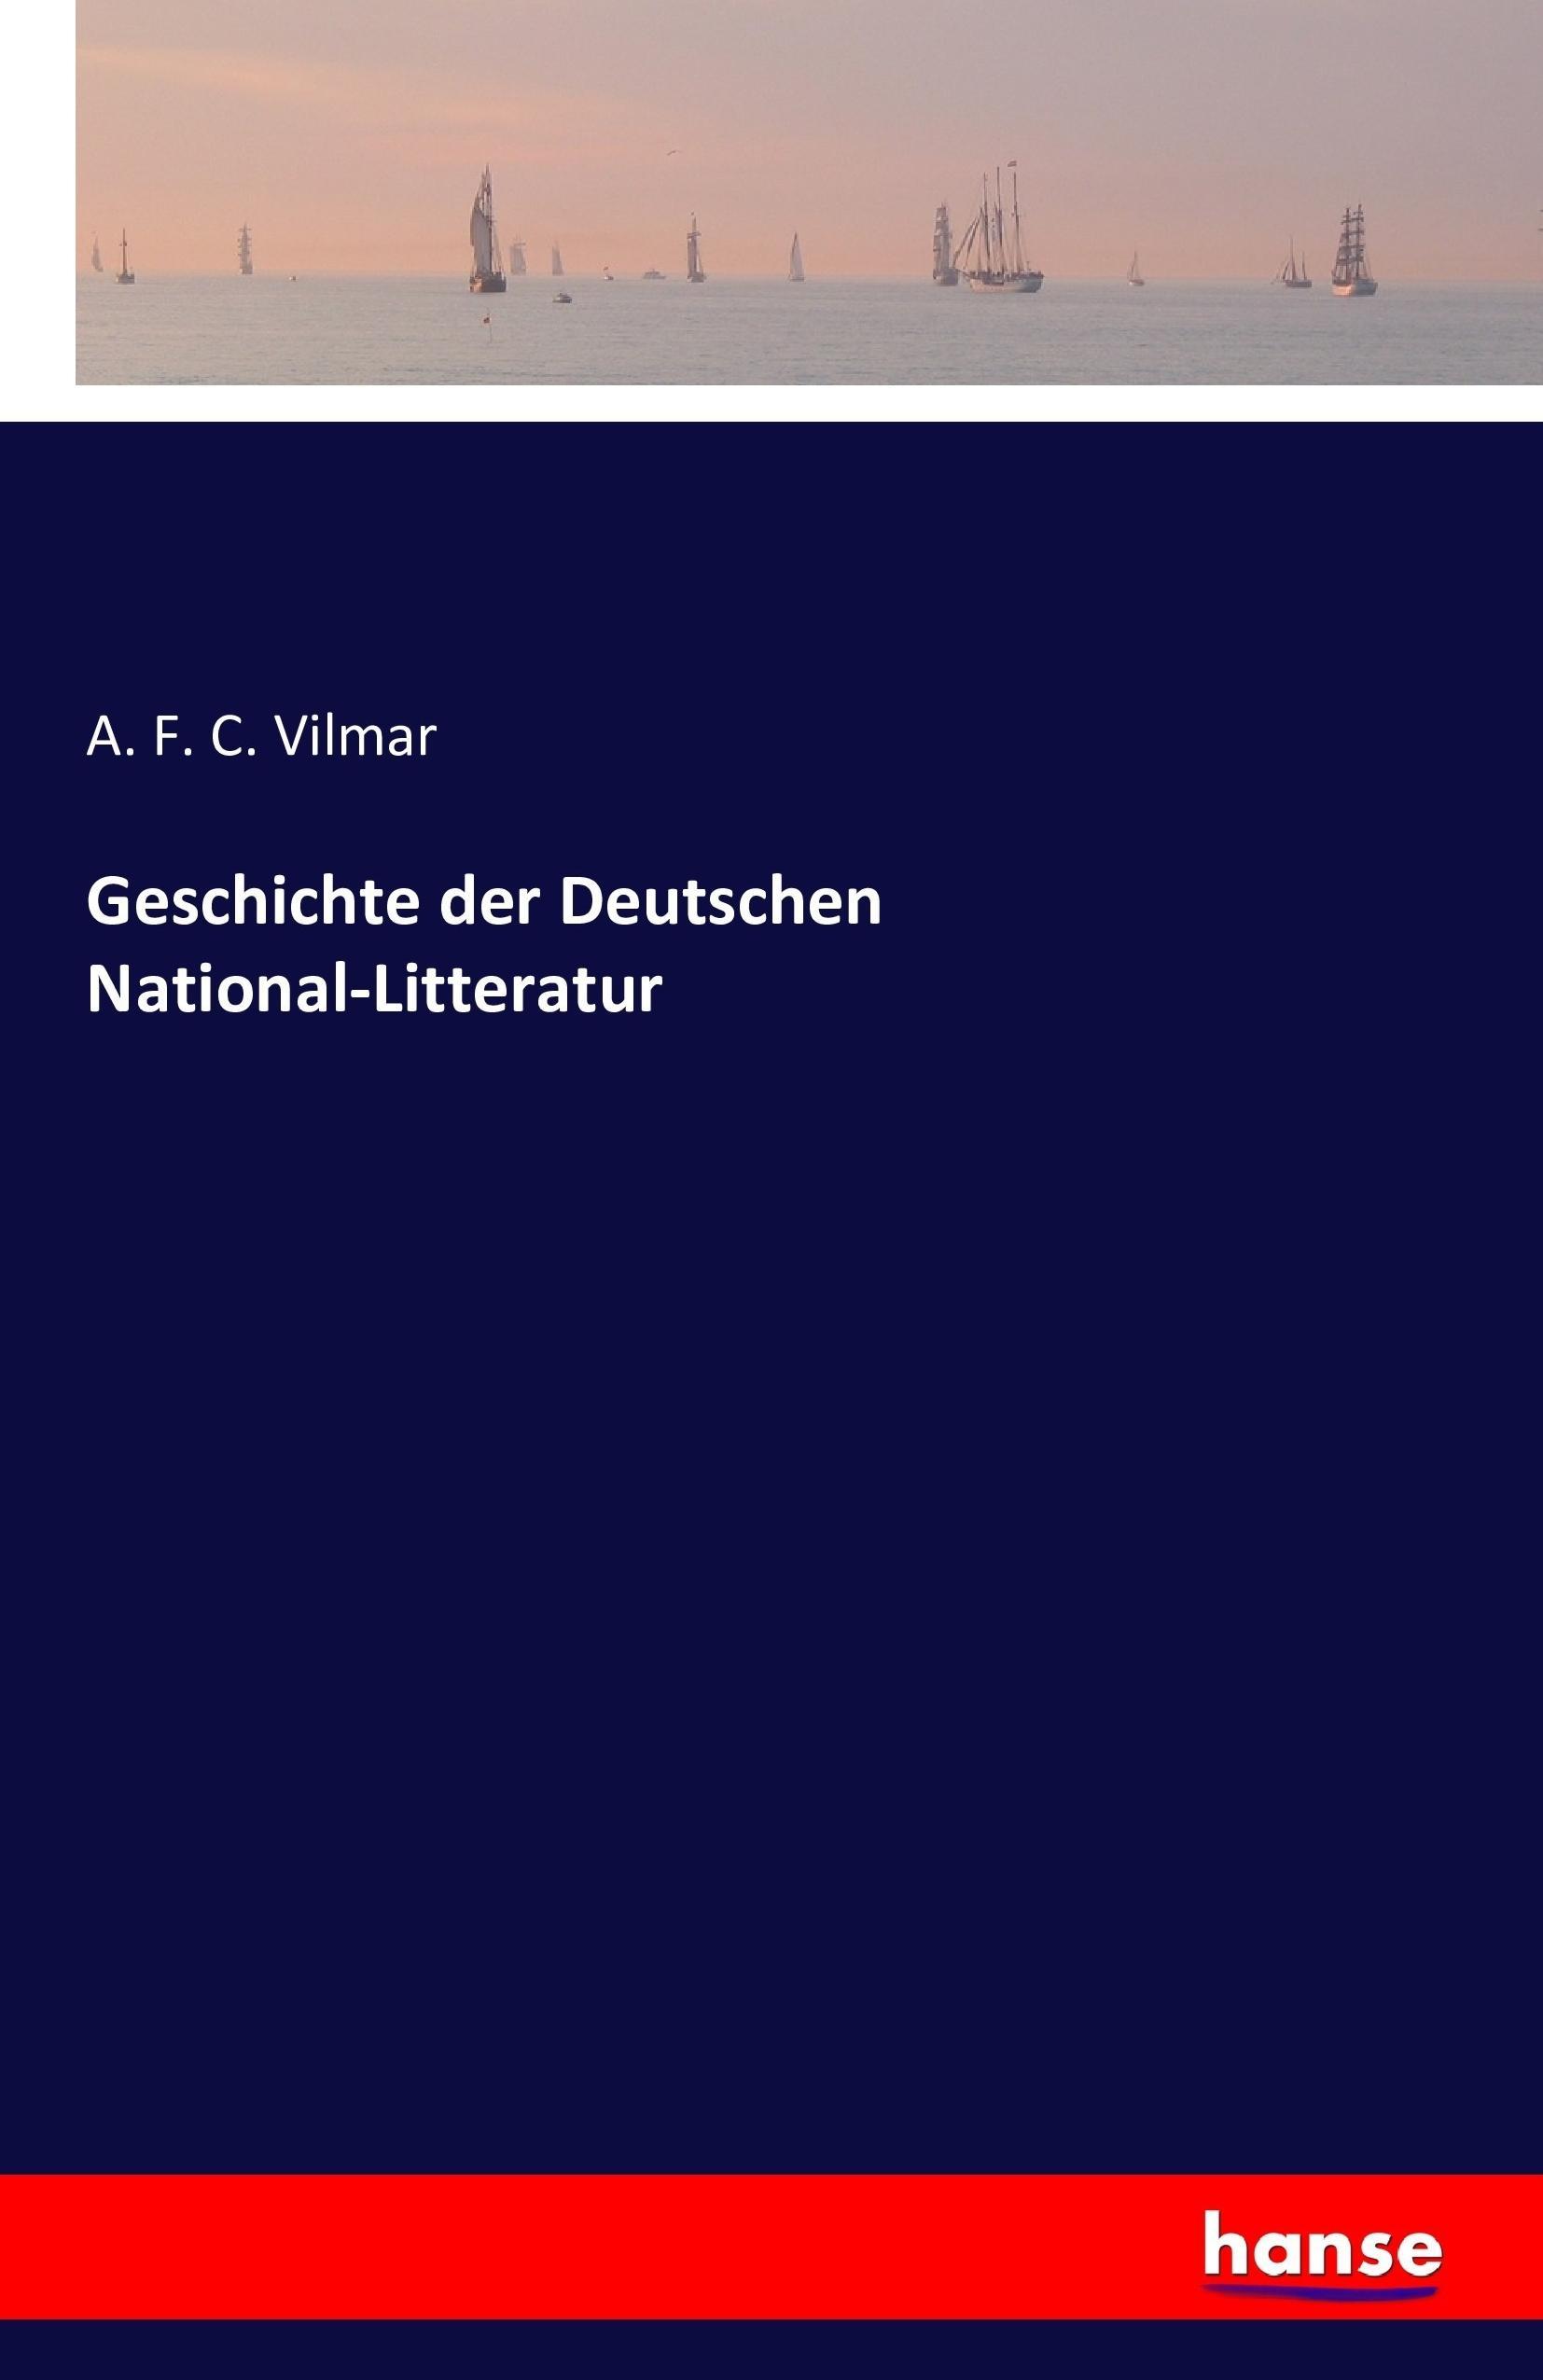 Geschichte der Deutschen National-Litteratur - Vilmar, A. F. C.